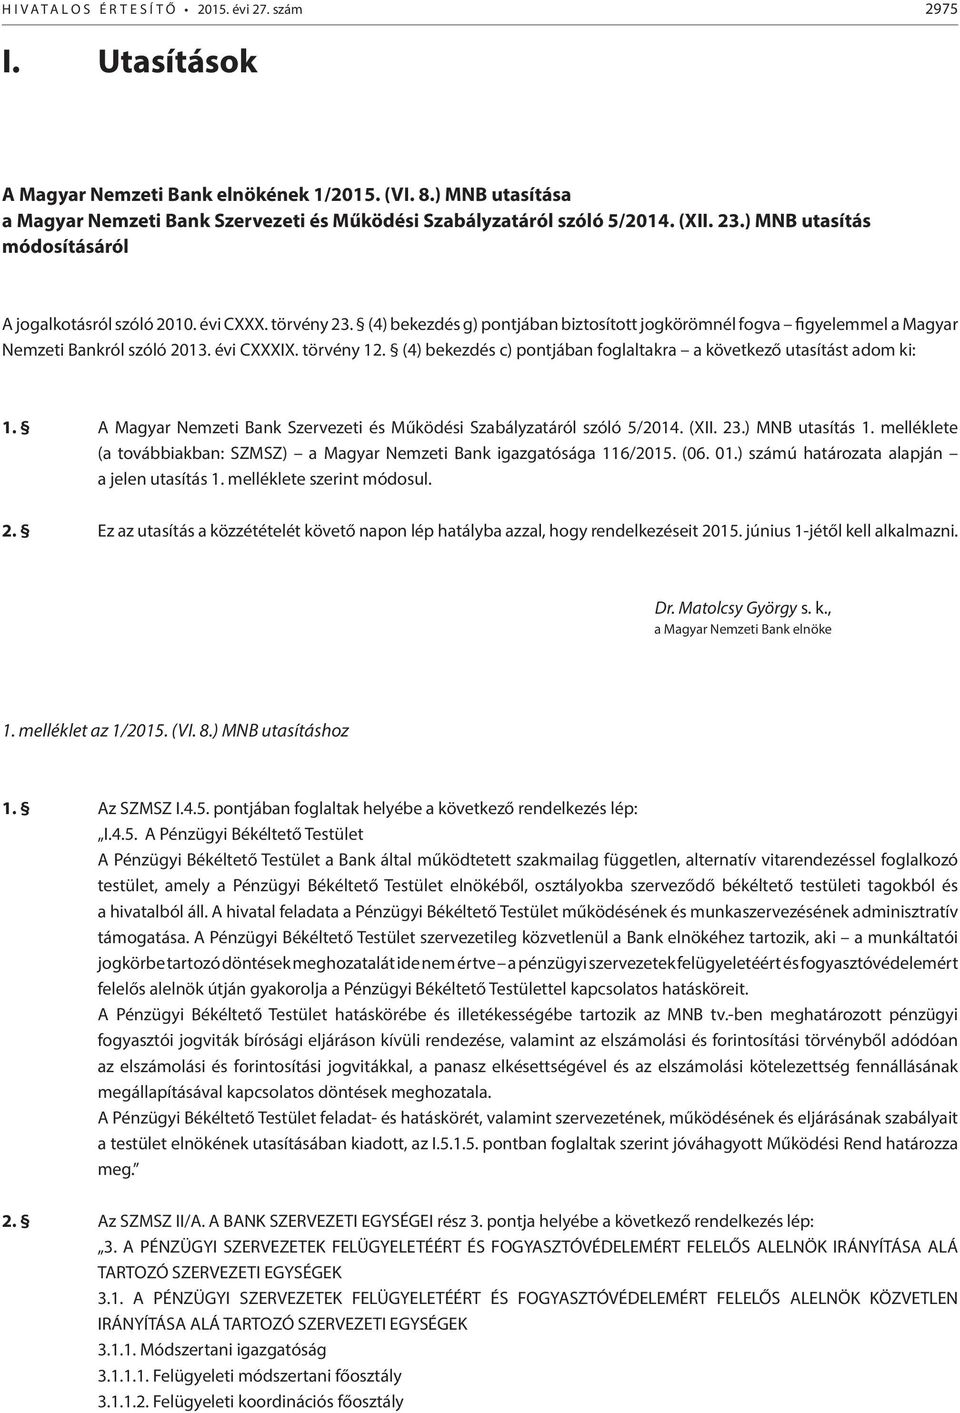 törvény 12. (4) bekezdés c) pontjában foglaltakra a következő utasítást adom ki: 1. A Magyar Nemzeti Bank Szervezeti és Működési Szabályzatáról szóló 5/2014. (XII. 23.) MNB utasítás 1.